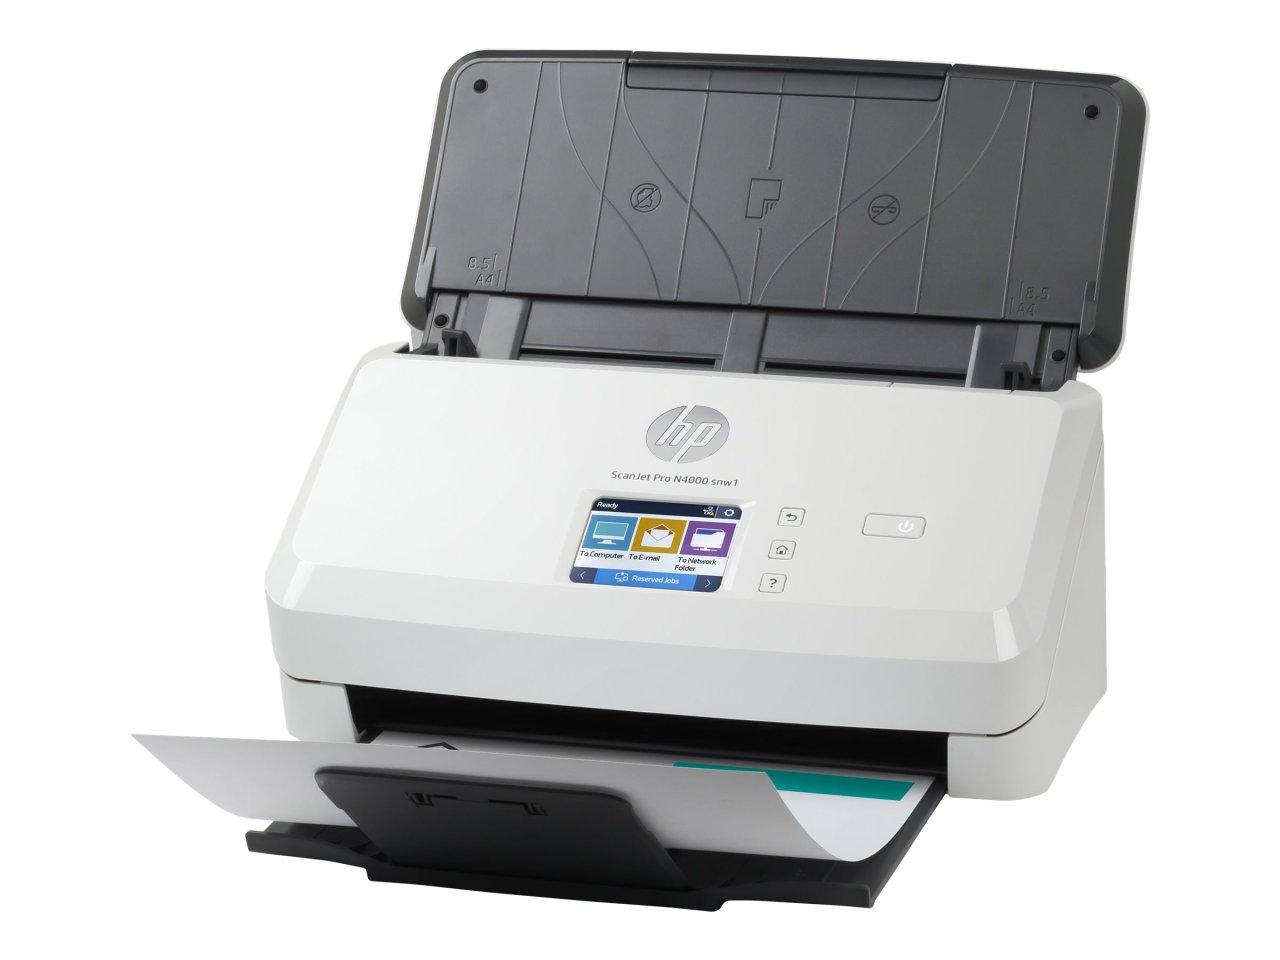 HP Scanjet Pro N4000 snw1 Sheet-feed Dokumentenscanner